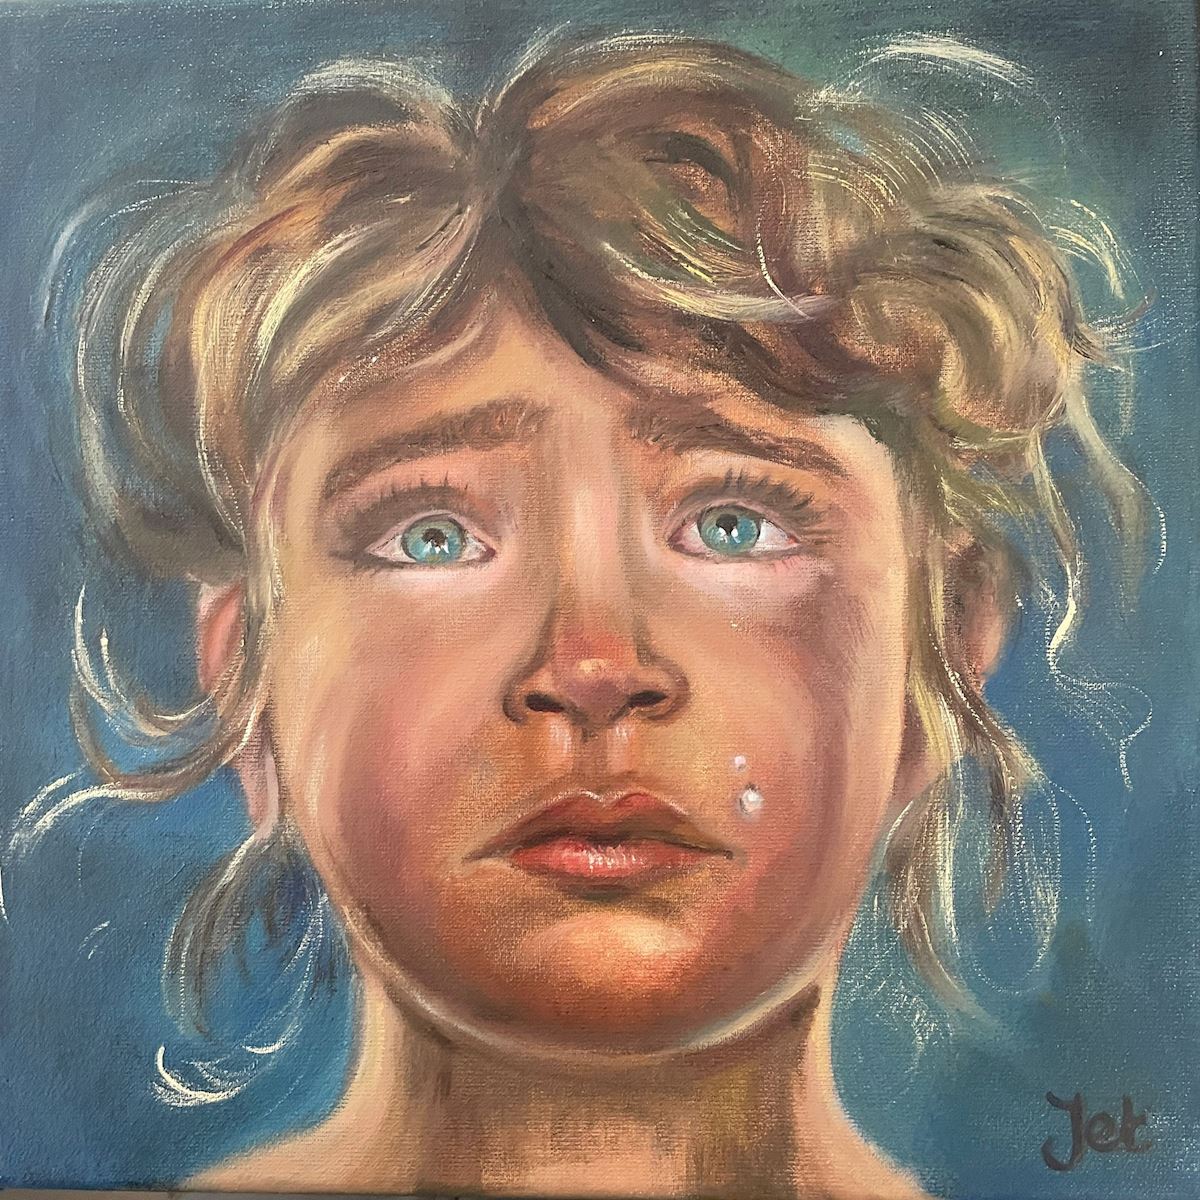 Huilend meisje tranen tranendal jet van der star kunst uit de kast noordwijk blauwe ogen